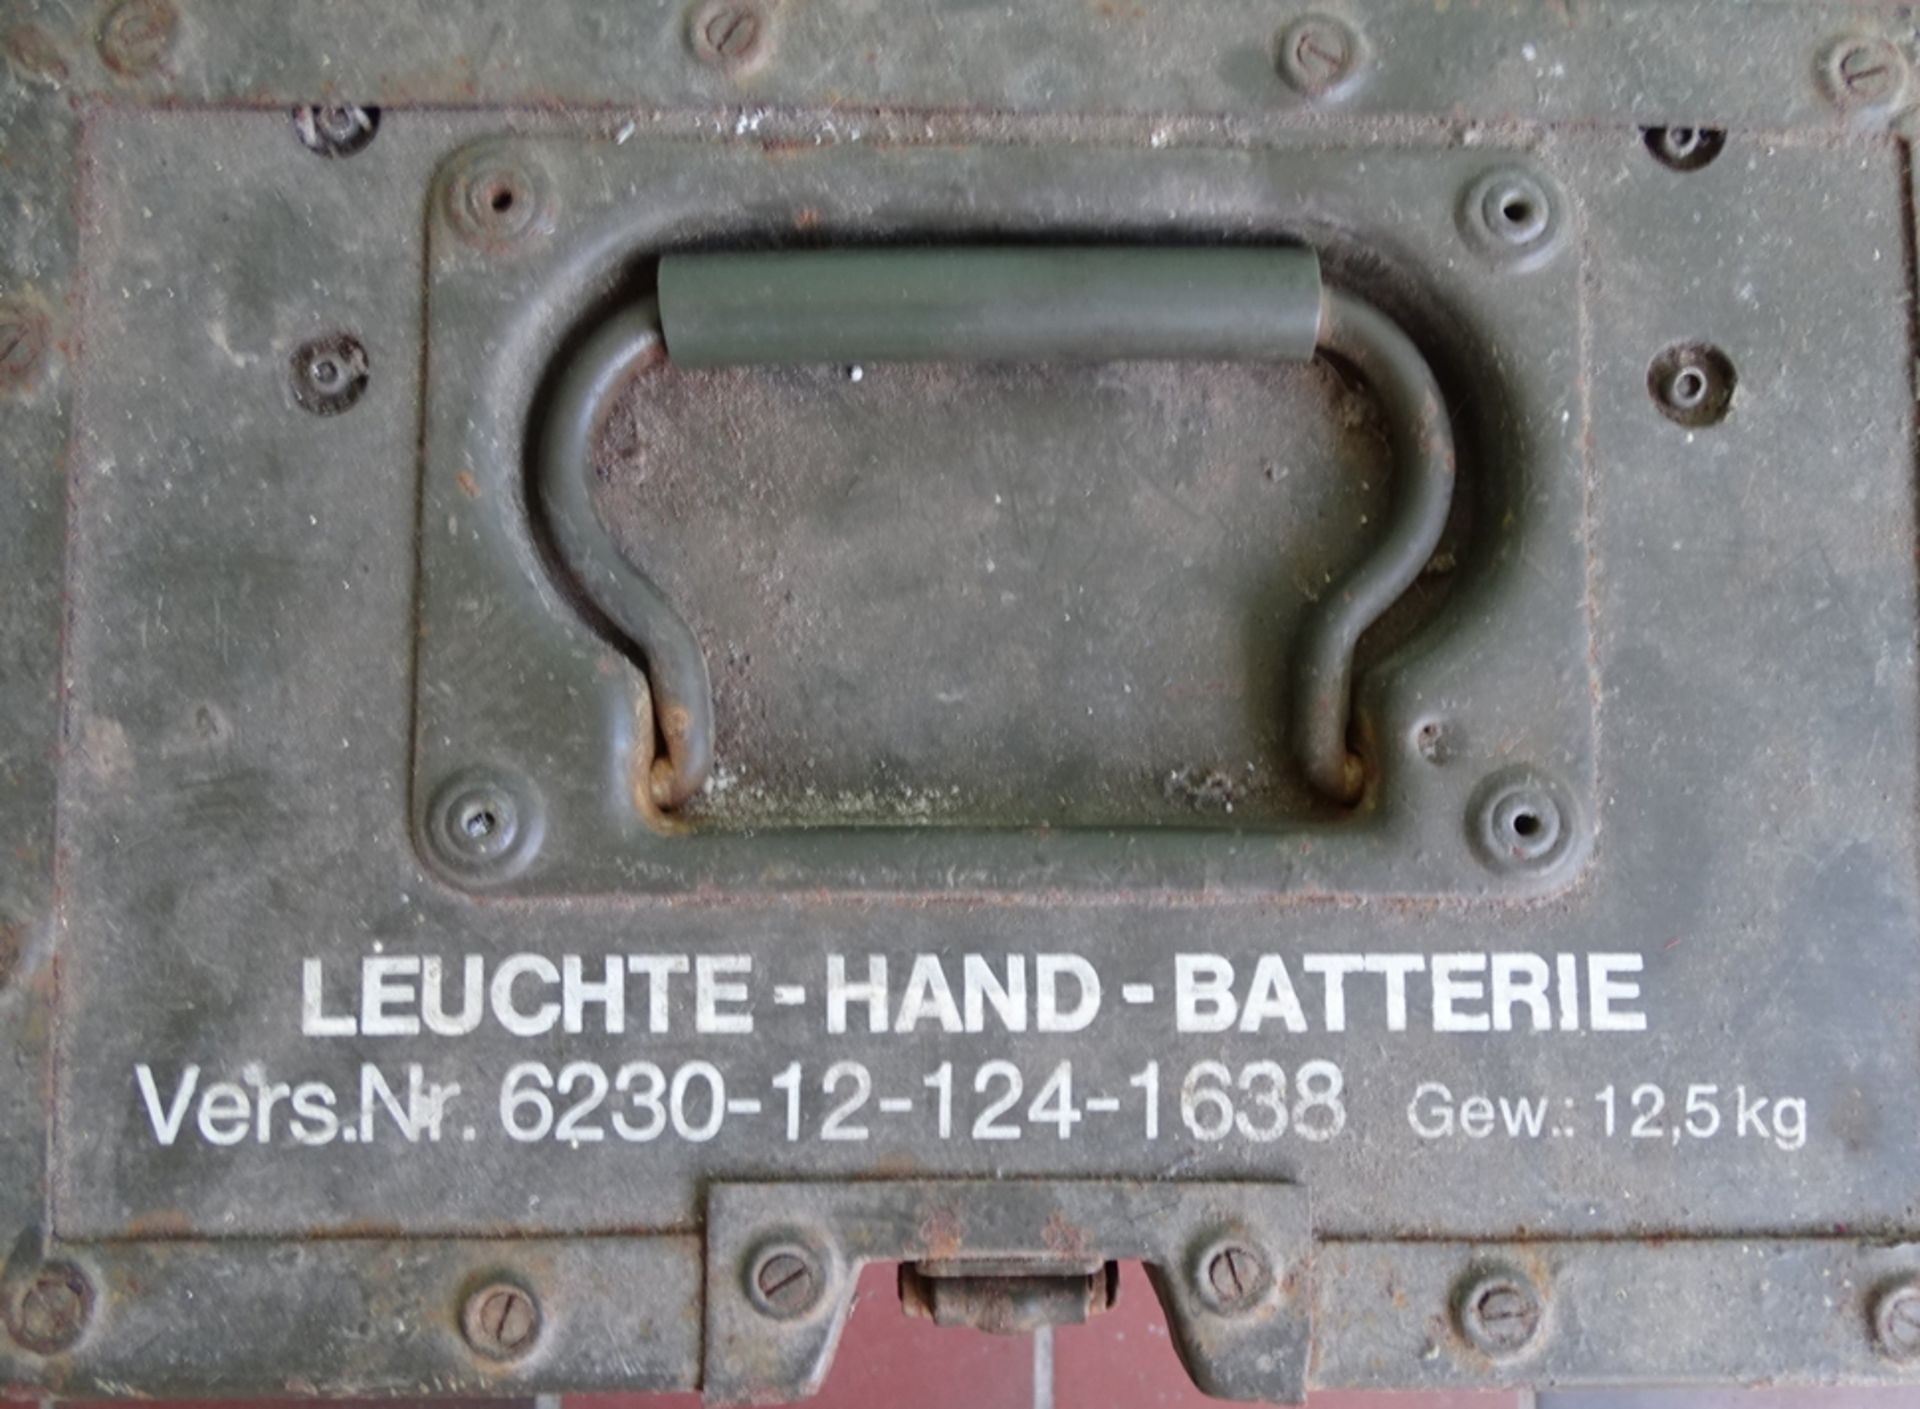 Bundeswehr Handlampe G4 in orig. Kasten, 1978, Funktion nicht geprüft, 41x30x20 cm - Bild 3 aus 7